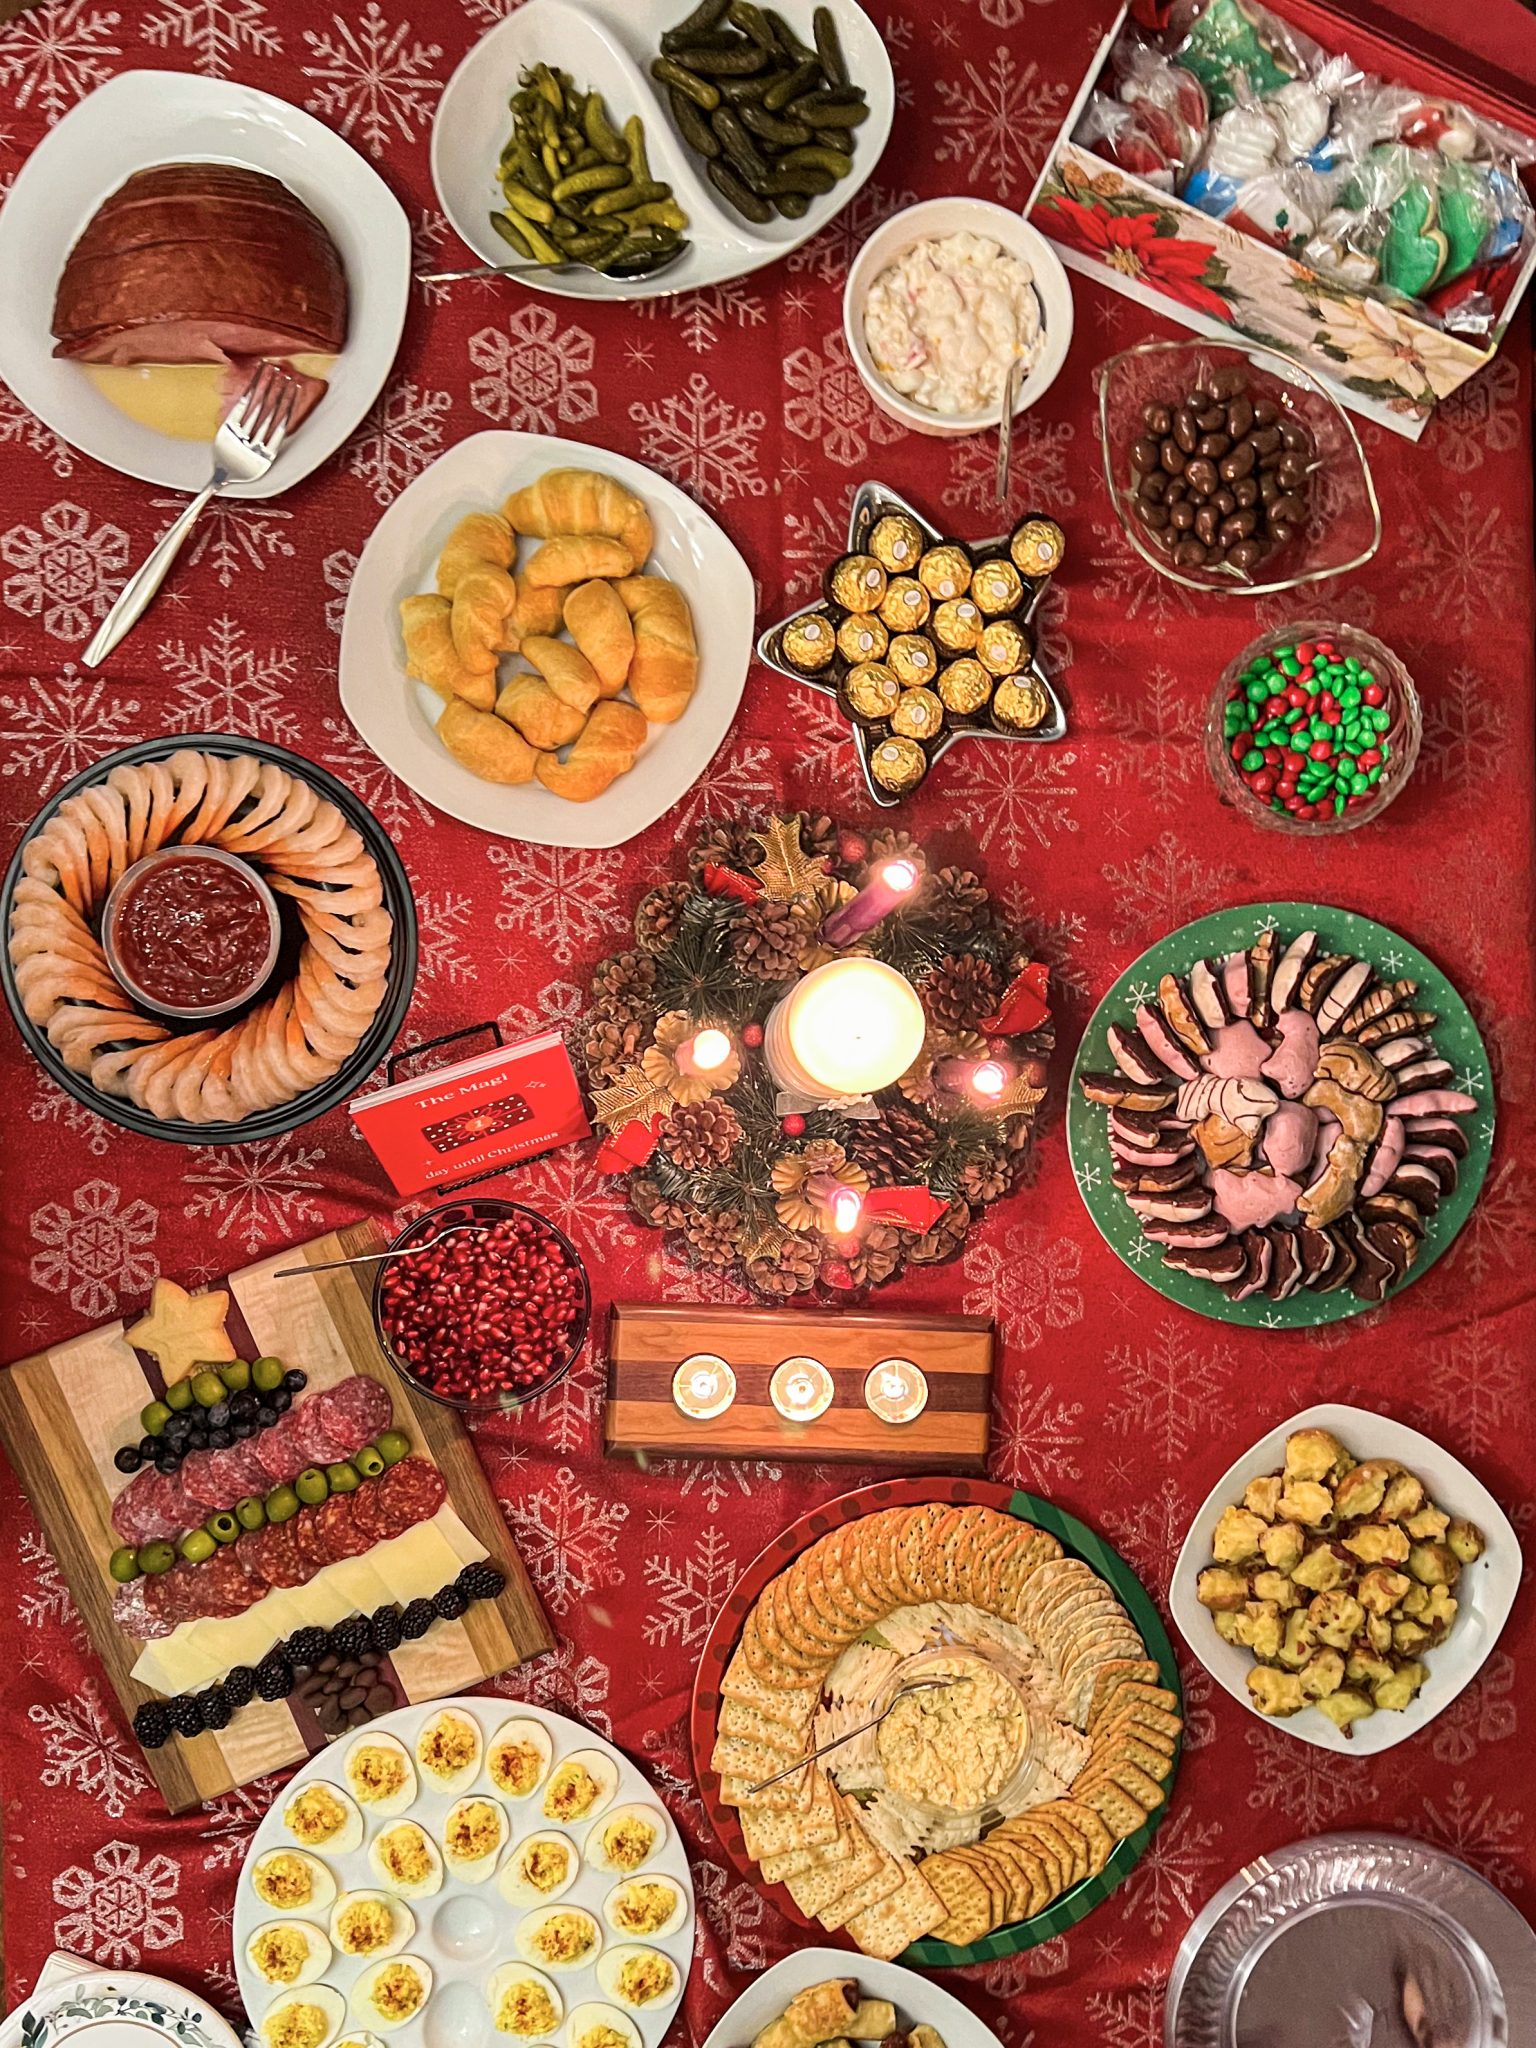 Christmas dinner spread